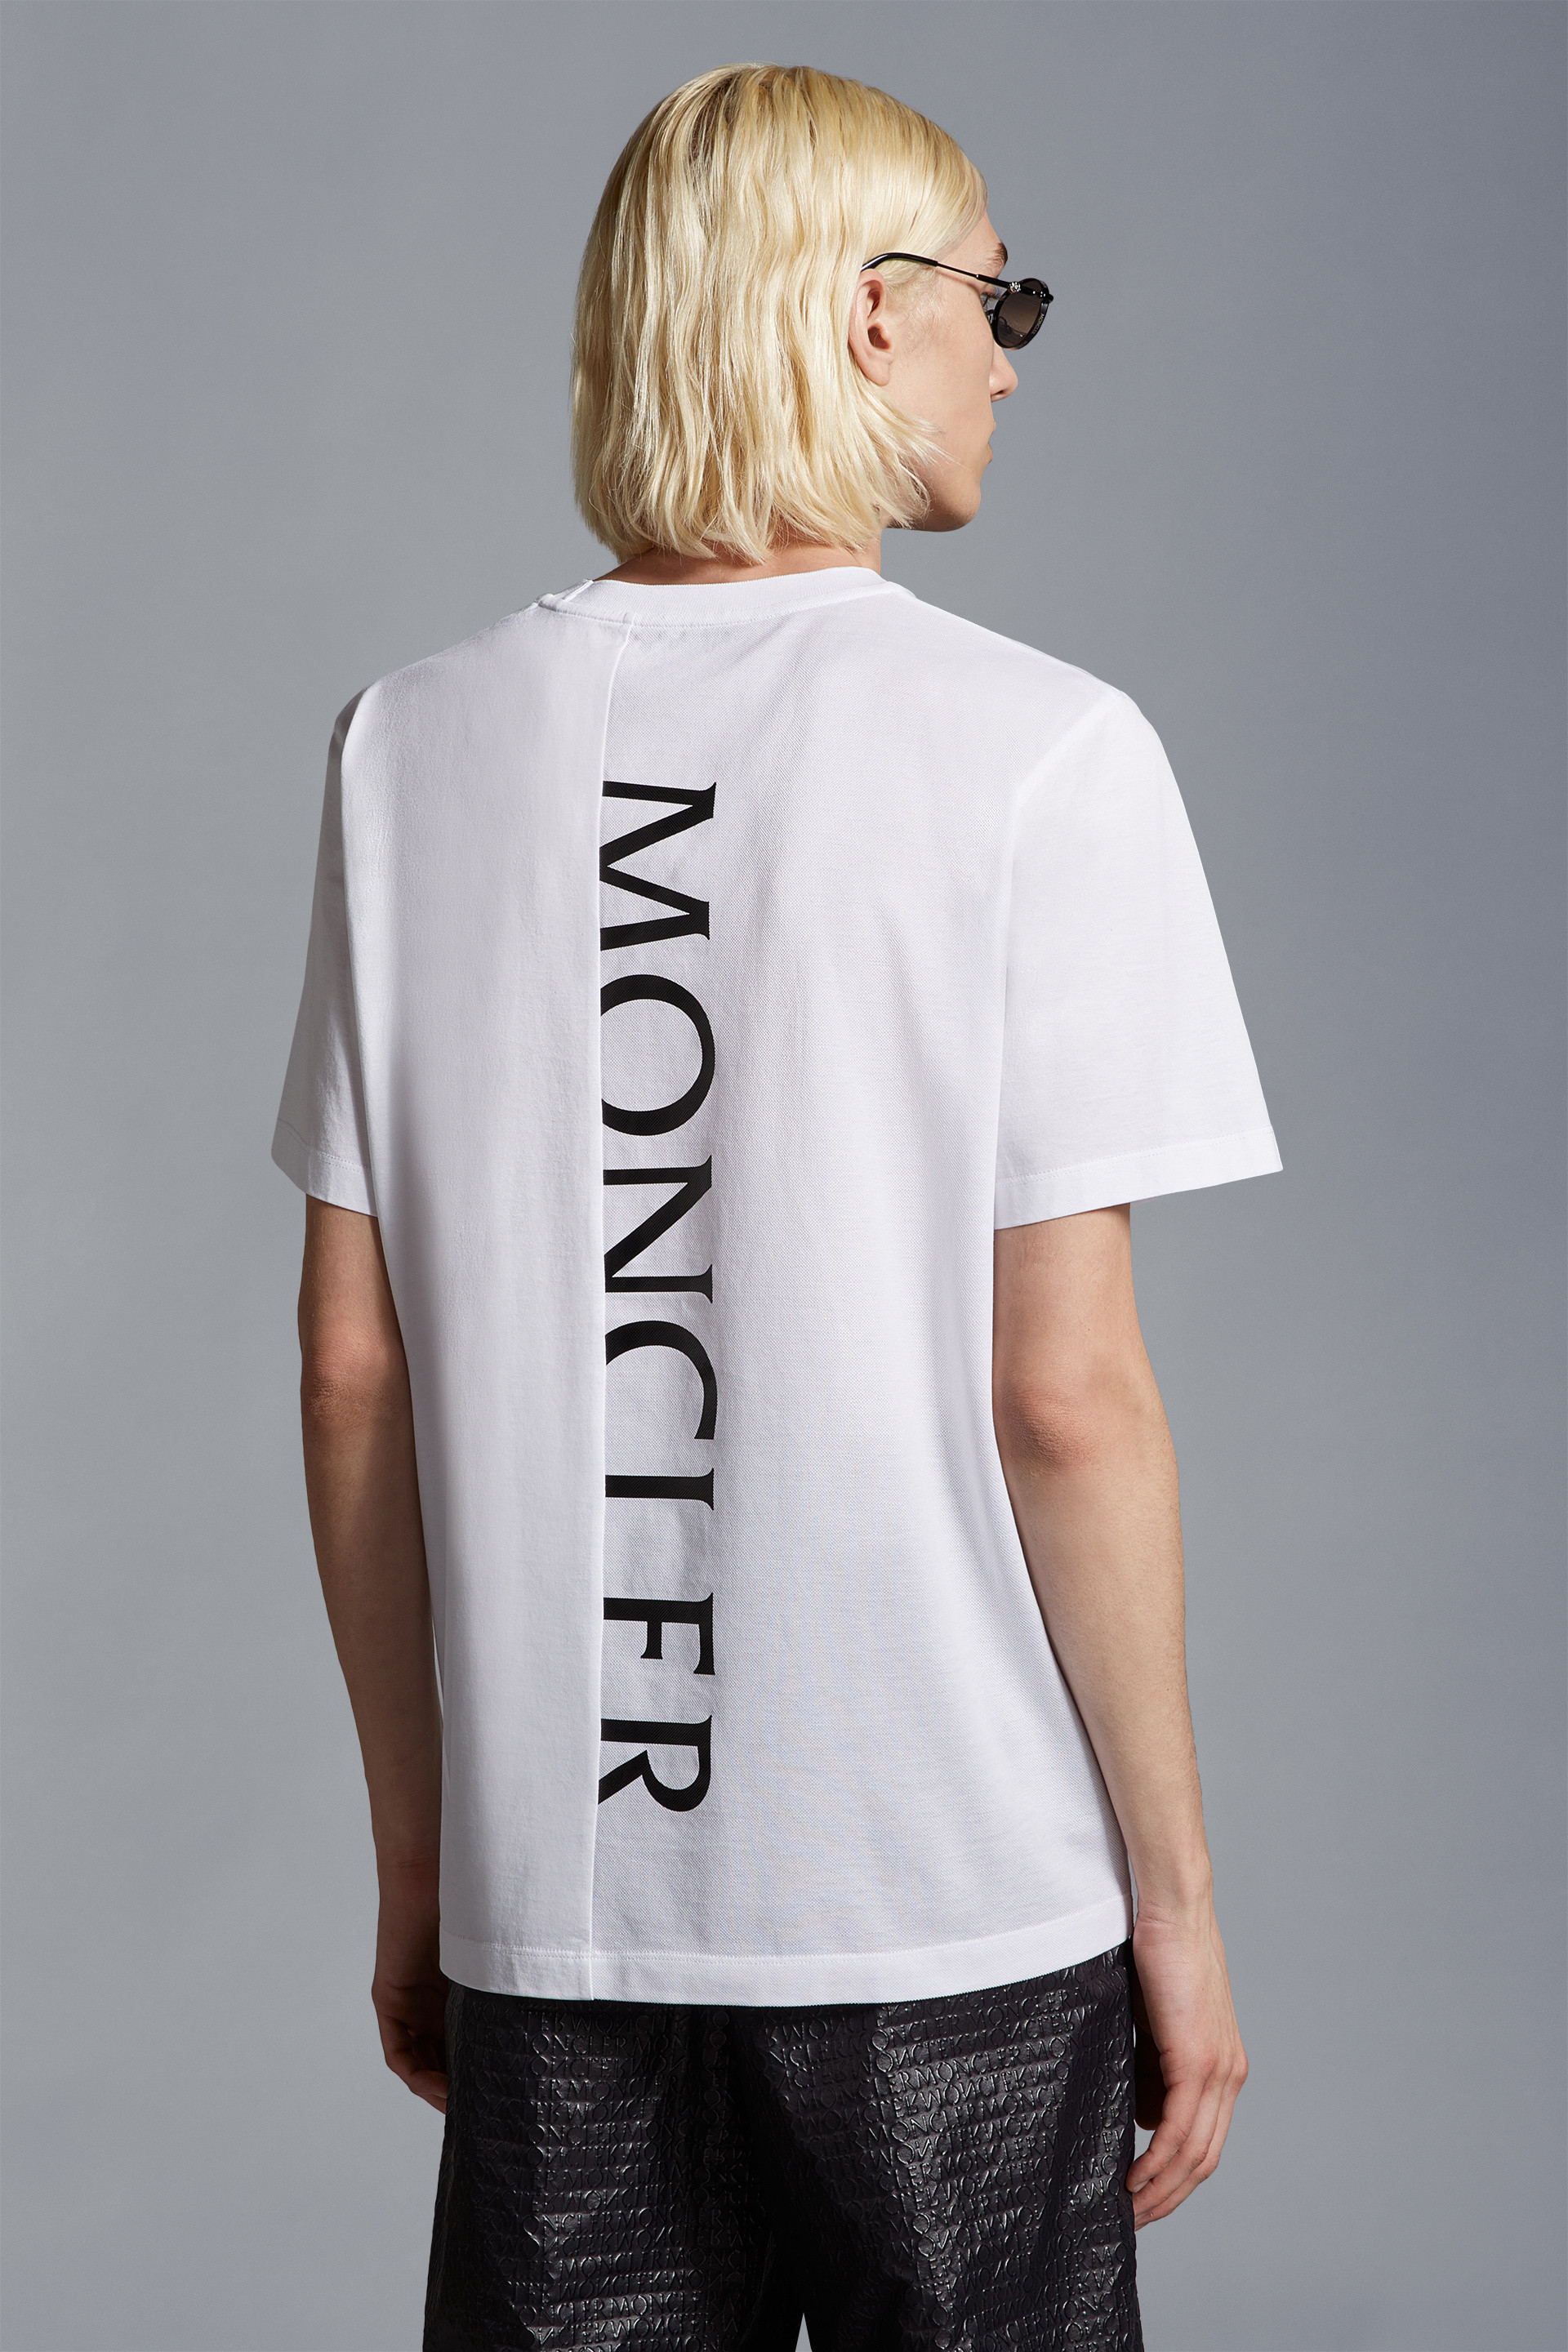 Camiseta negra para hombre – letras blancas en la parte posterior de la  camiseta